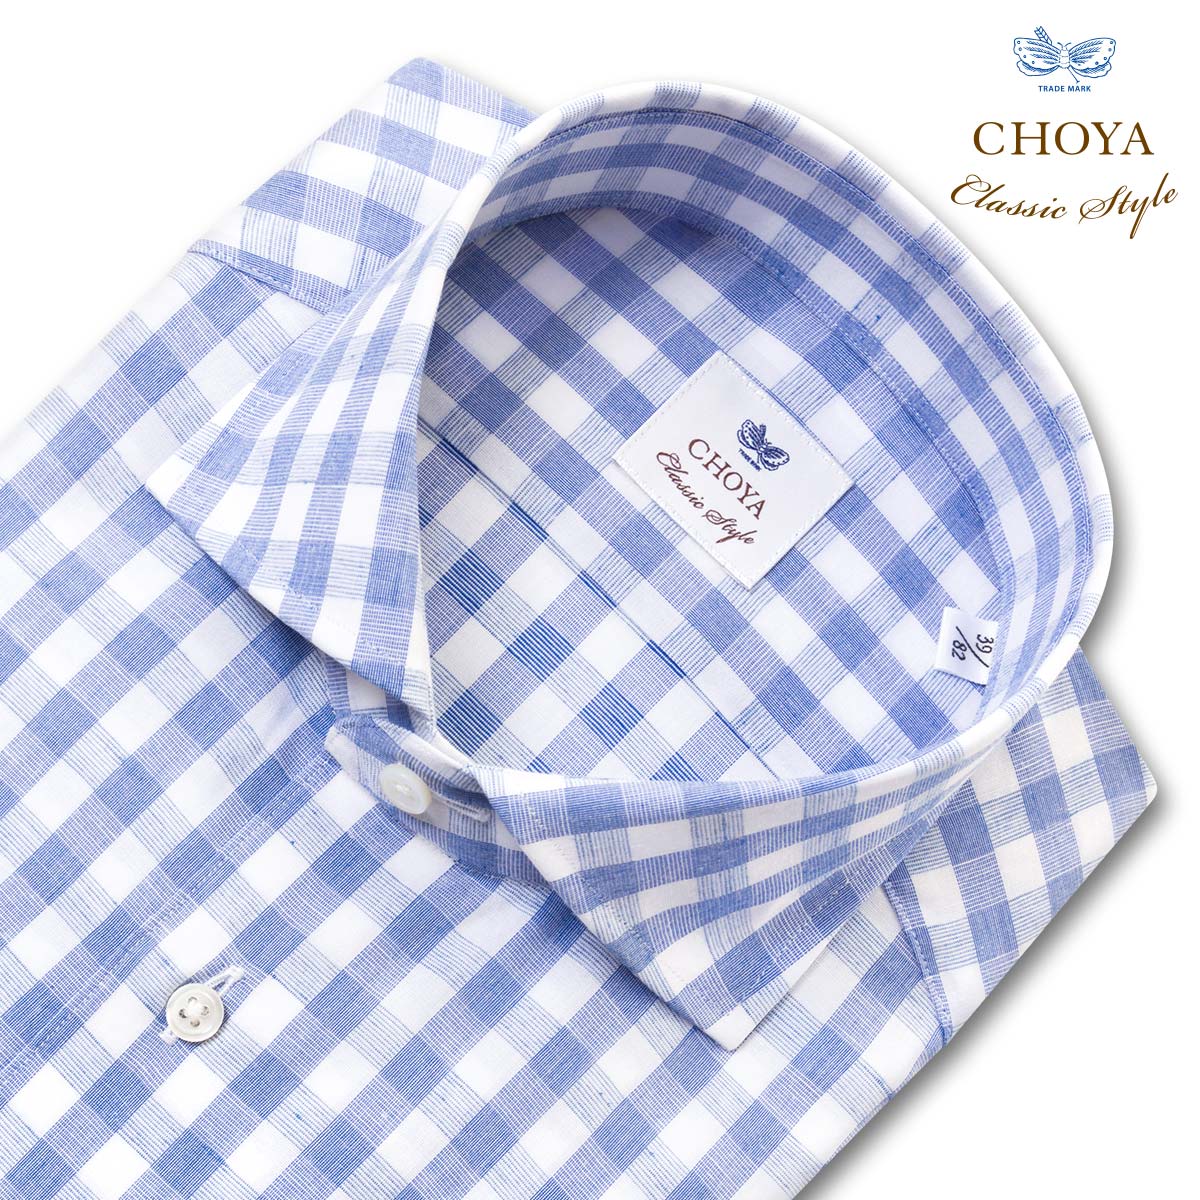 CHOYA Classic Style 長袖 ワイシャツ メンズ 綿麻 カッタウェイワイドカラー ギンガムチェック スカイブルー ホワイト  (ccd511-555) 23FA